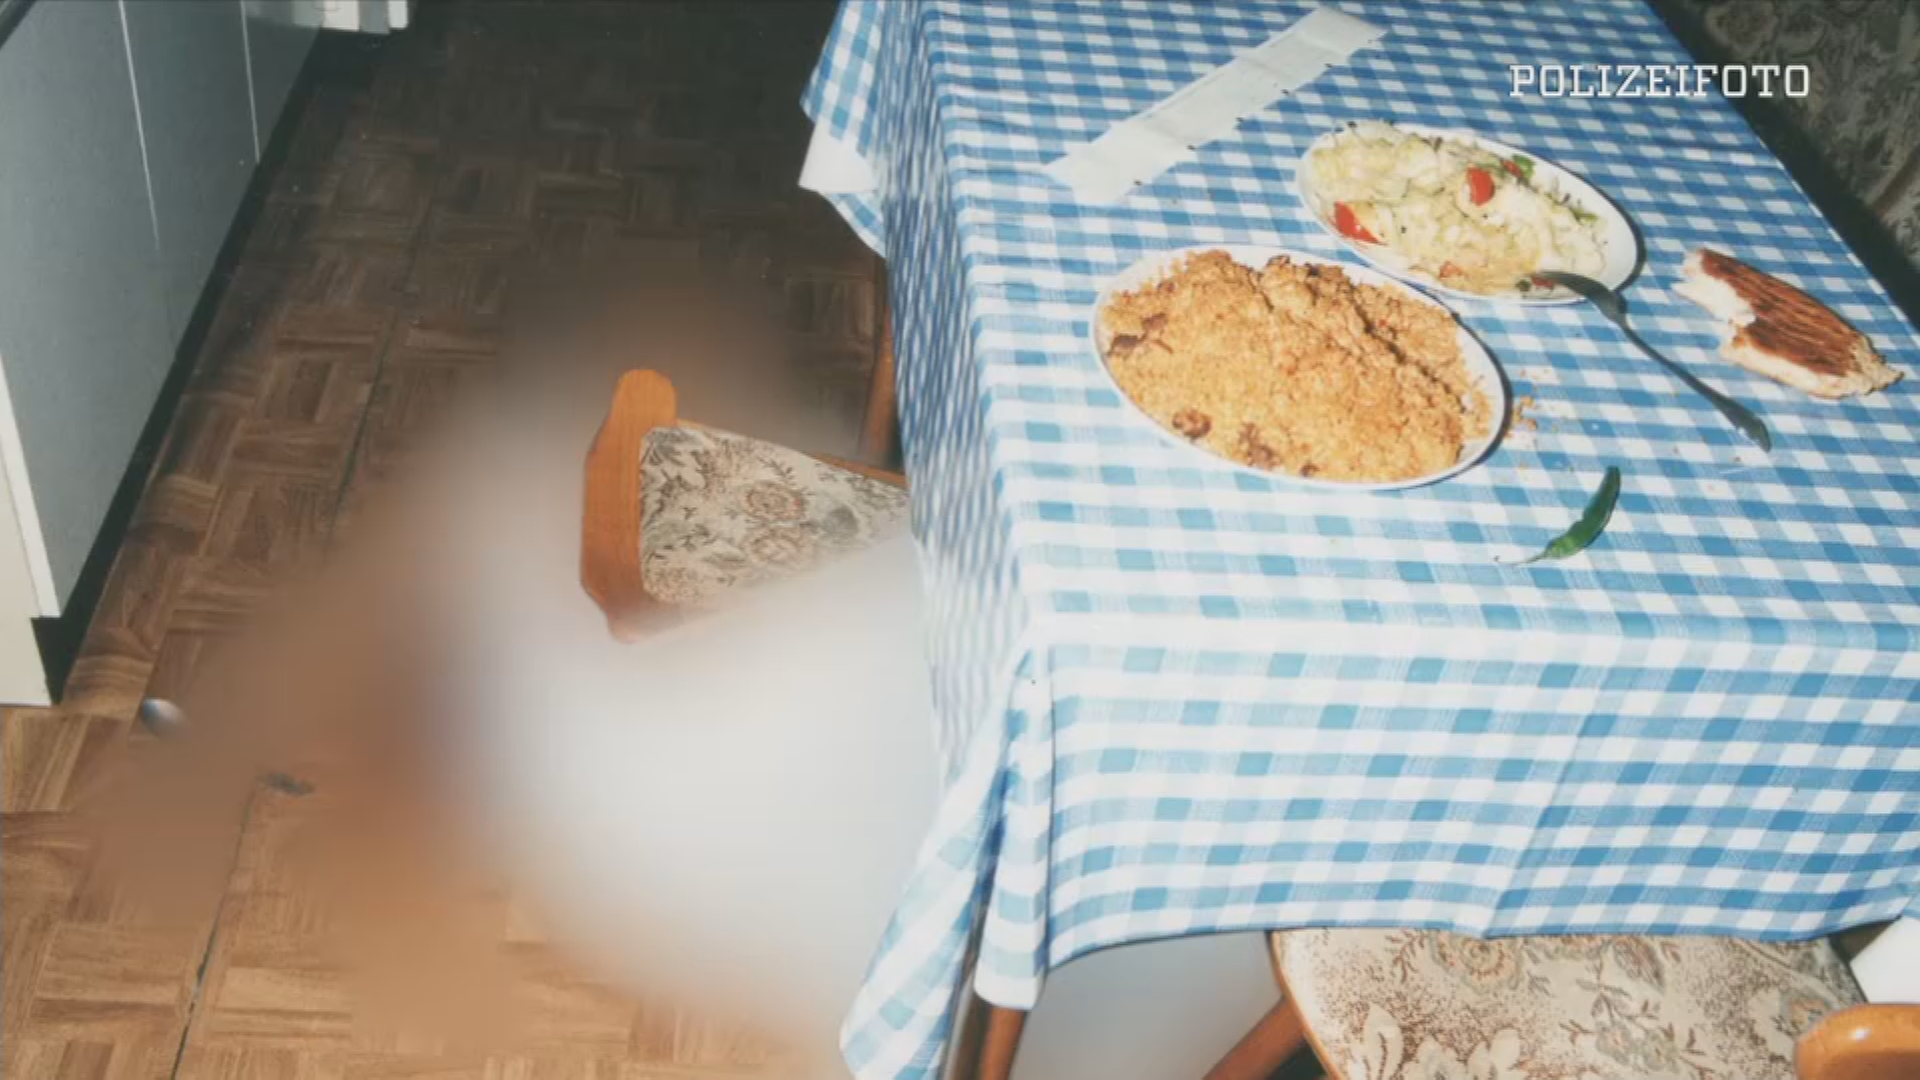 Tatortfoto: Leiche (unkenntlich) liegt am Boden einer Küche. Auf dem Tisch stehen zwei Teller mit Essen und ein angebissenes Stück Brot. Oben Rechts eingeblendet: "Polizeifoto"